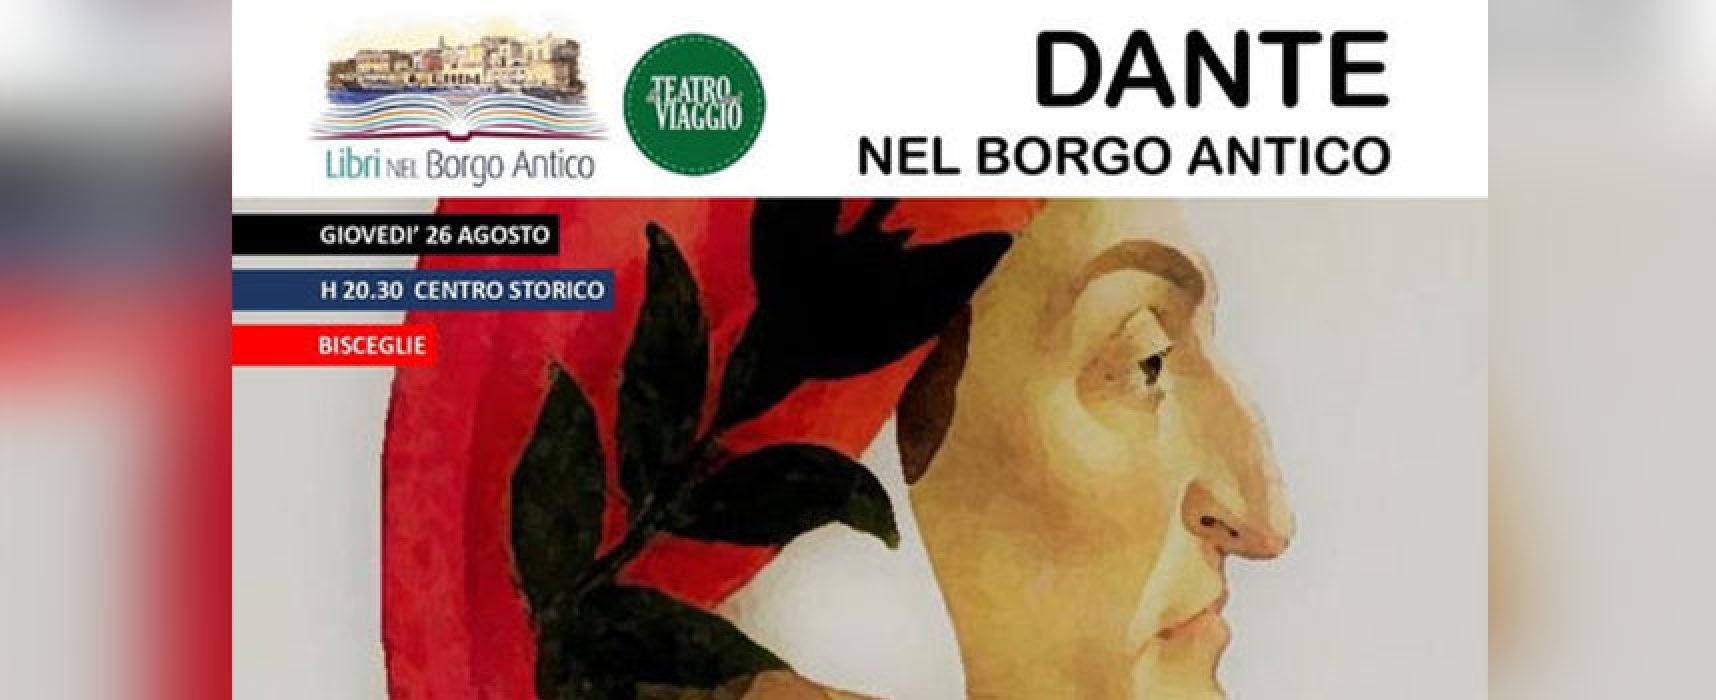 Al via “Libri nel Borgo Antico”, si parte con uno spettacolo itinerante dedicato a Dante